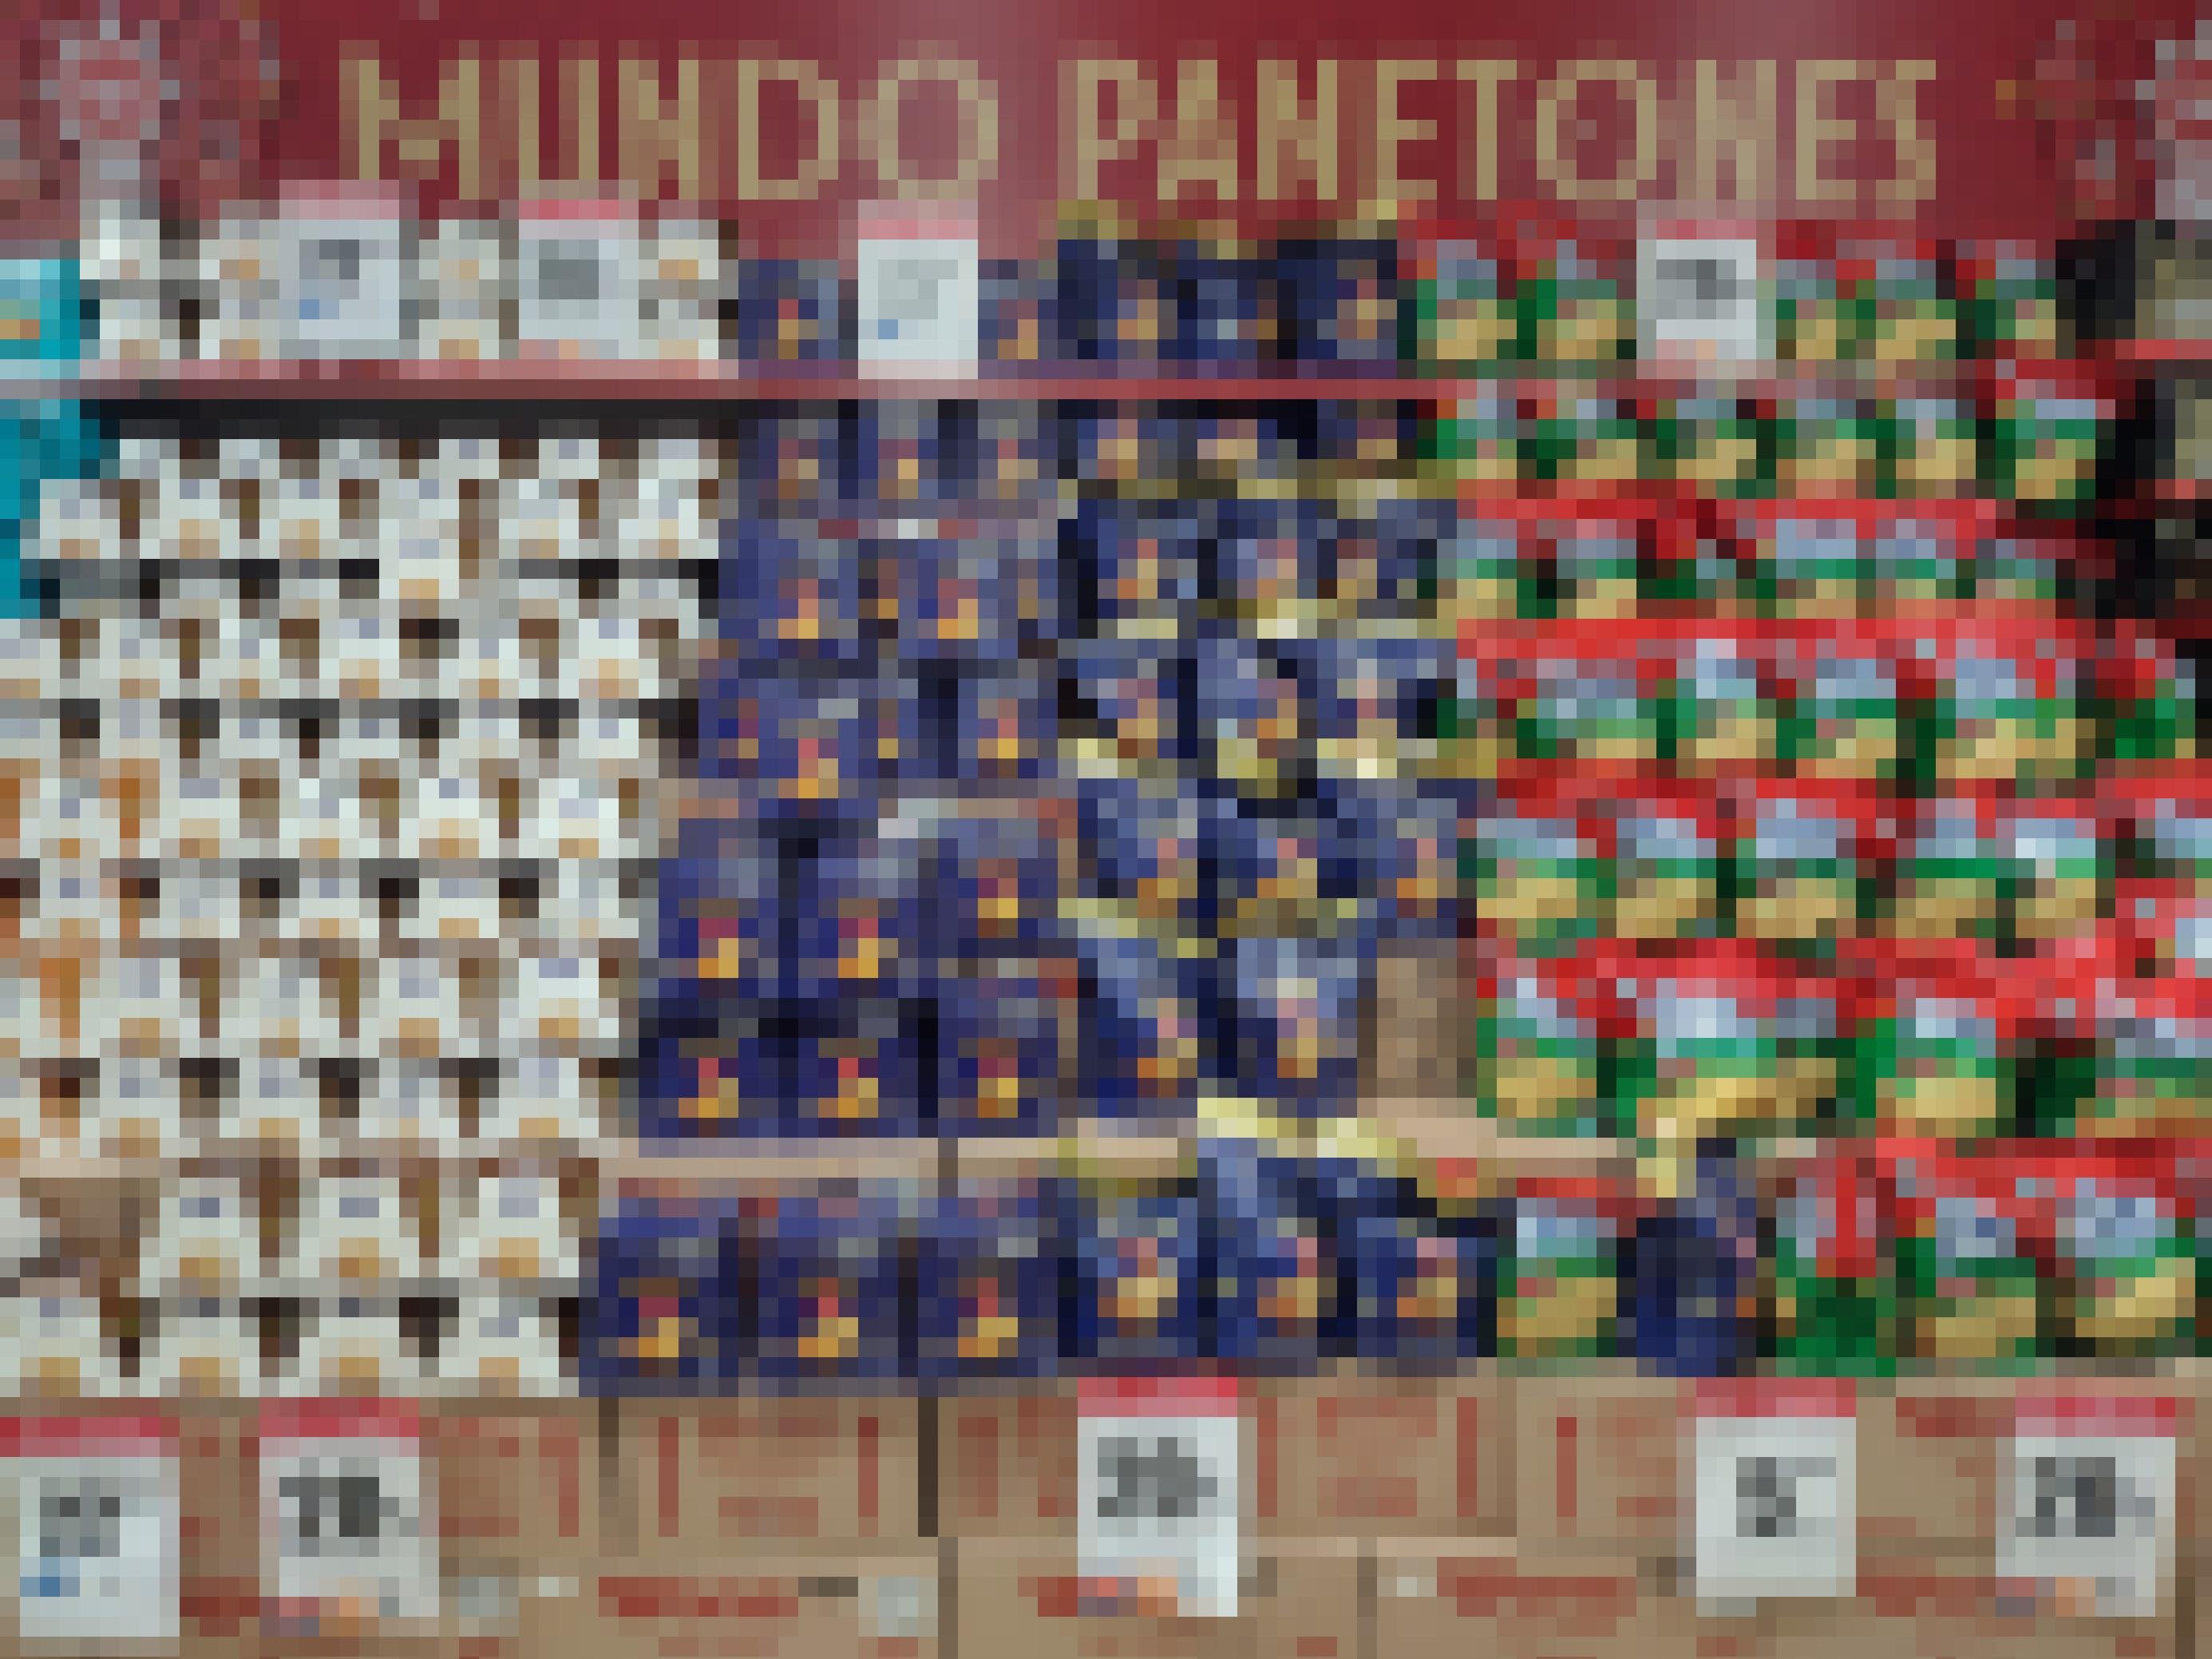 Eine komplette Wand im Supermarkt voller Panettone. Sie sind farblich und auf einer Treppe angeordnet, wie in einem Freilichttheater.  5, 20 oder 22 Prozent Rabatt, verkünden Schilder. Darüber steht auf Spanisch: Mundo Pantones.